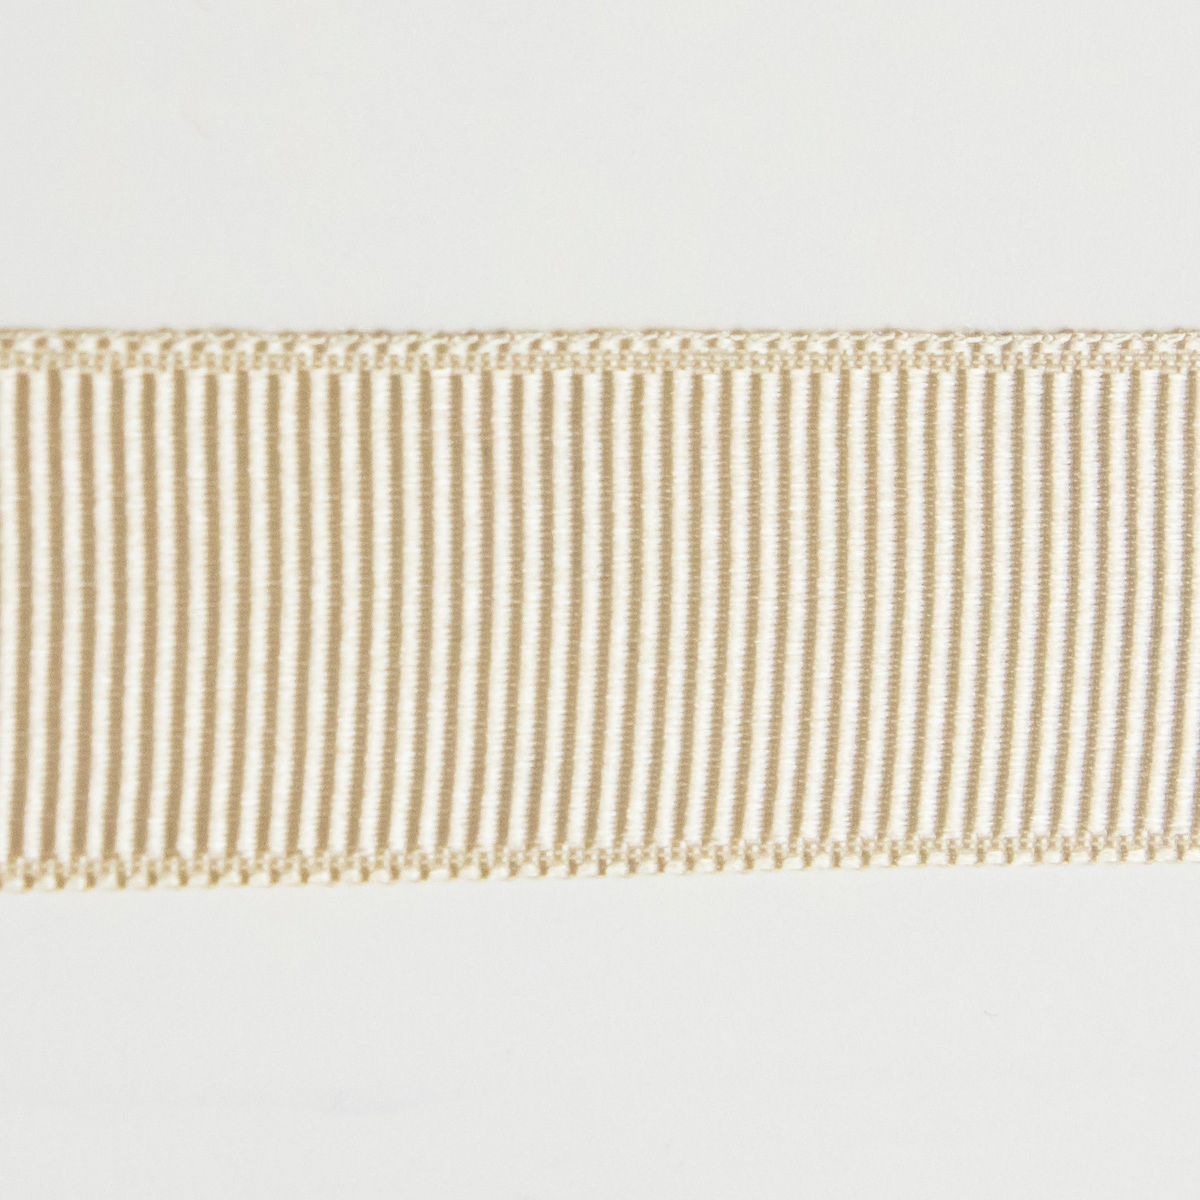 kurzes Ripsband geklebt (20 mm breit)